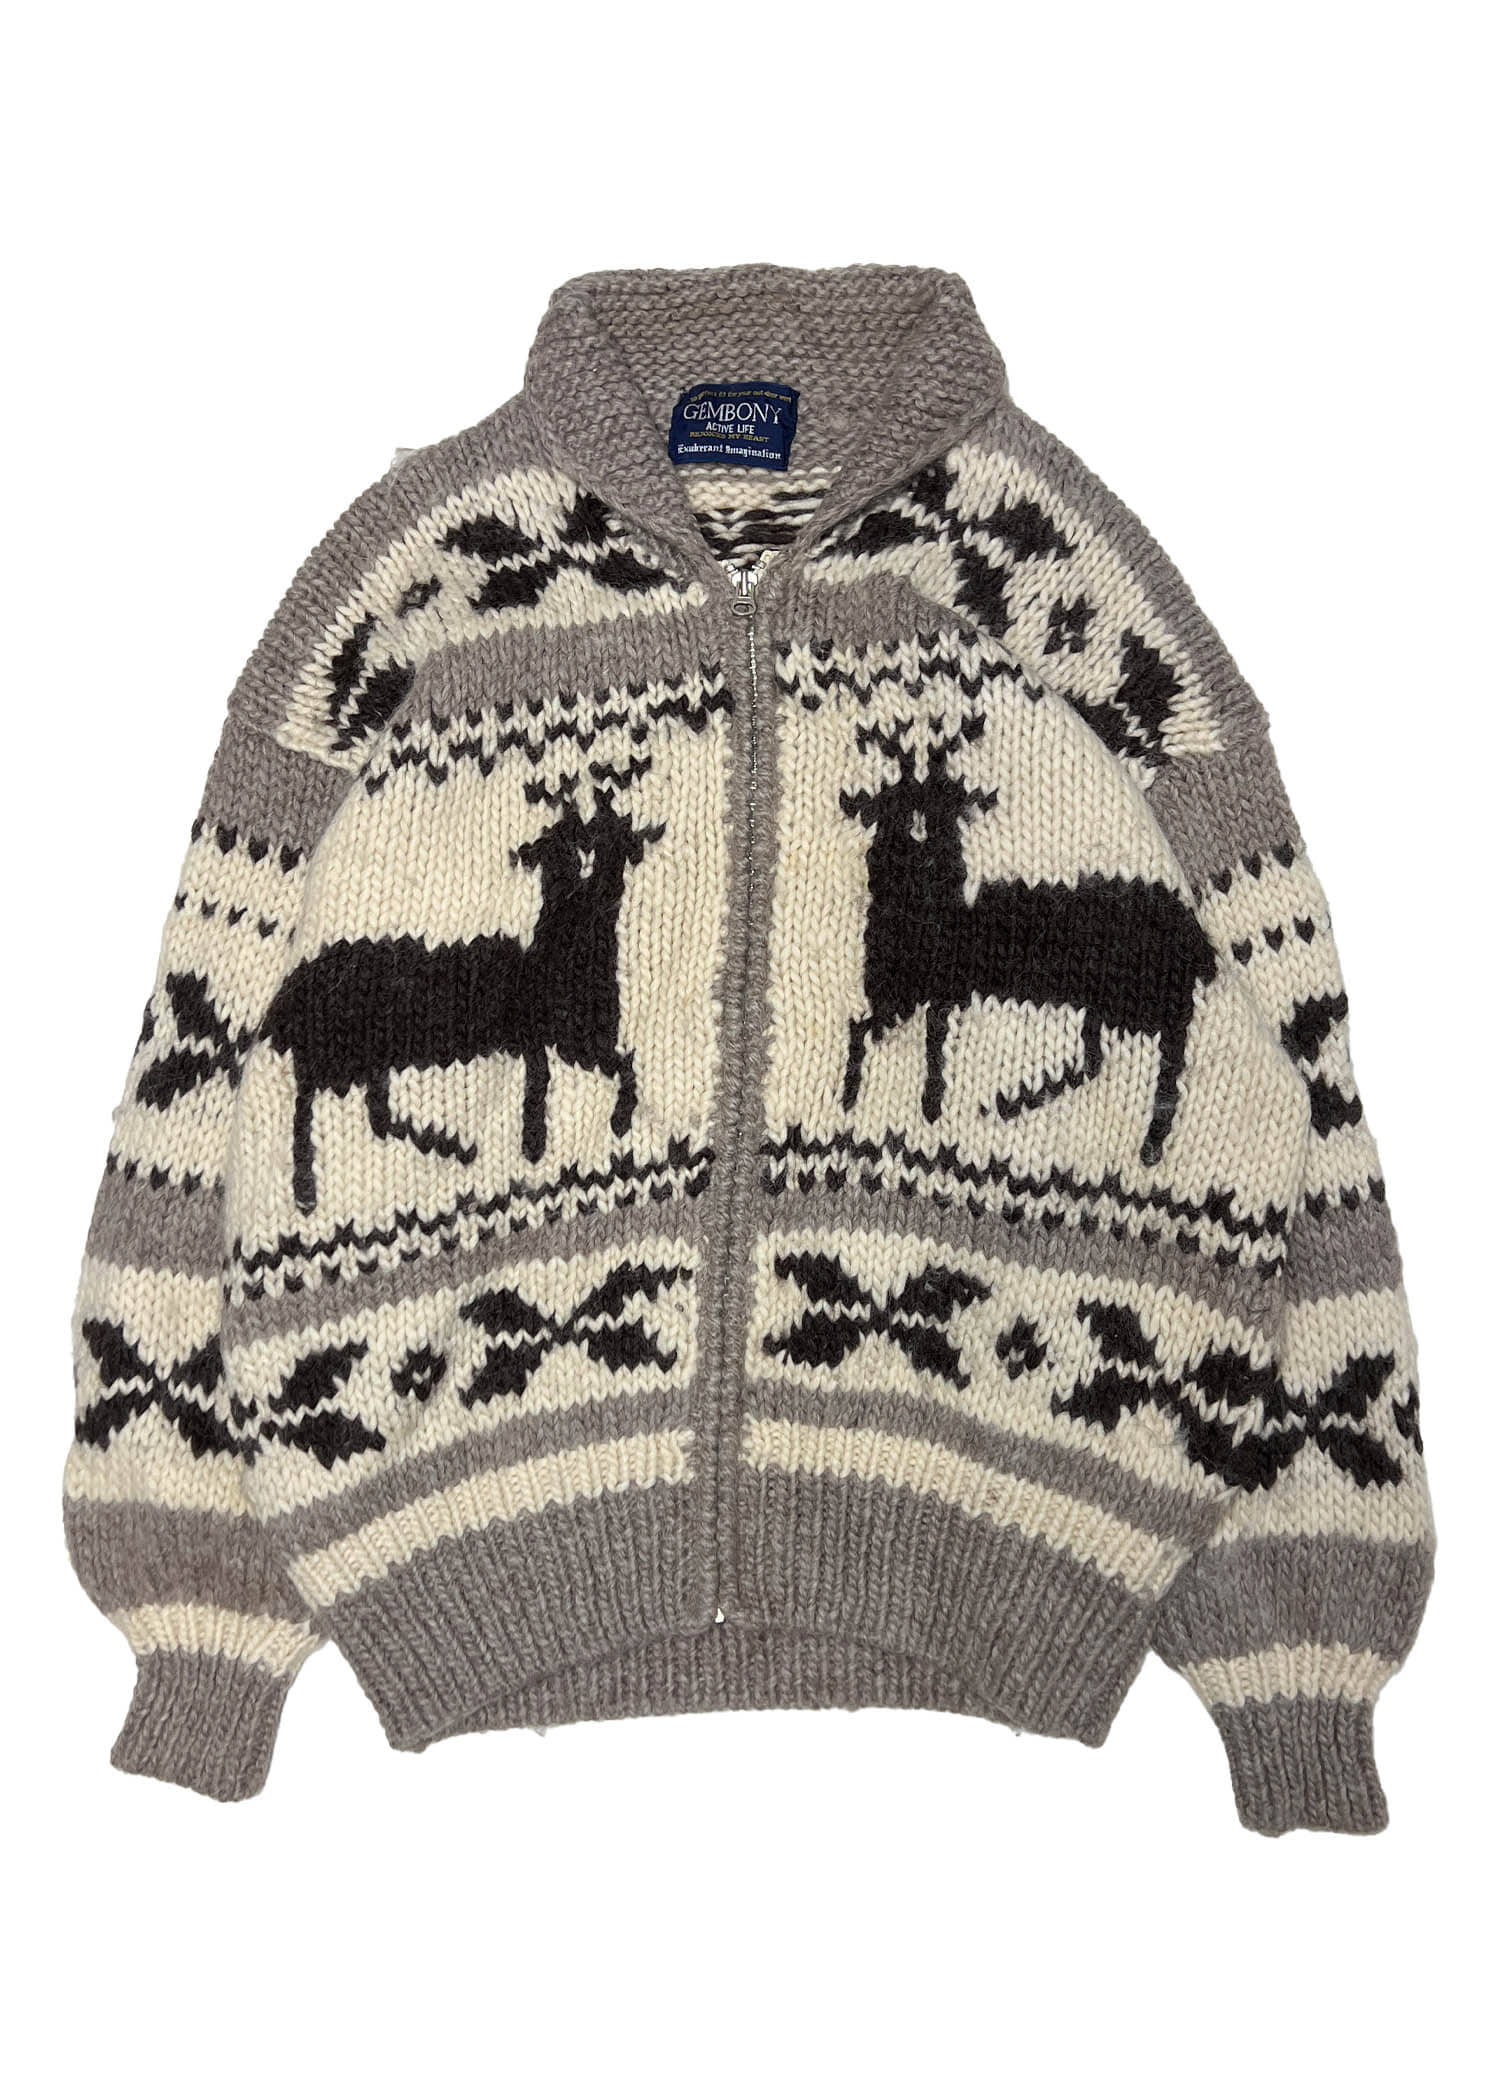 GEMBOY heavy wool sweater